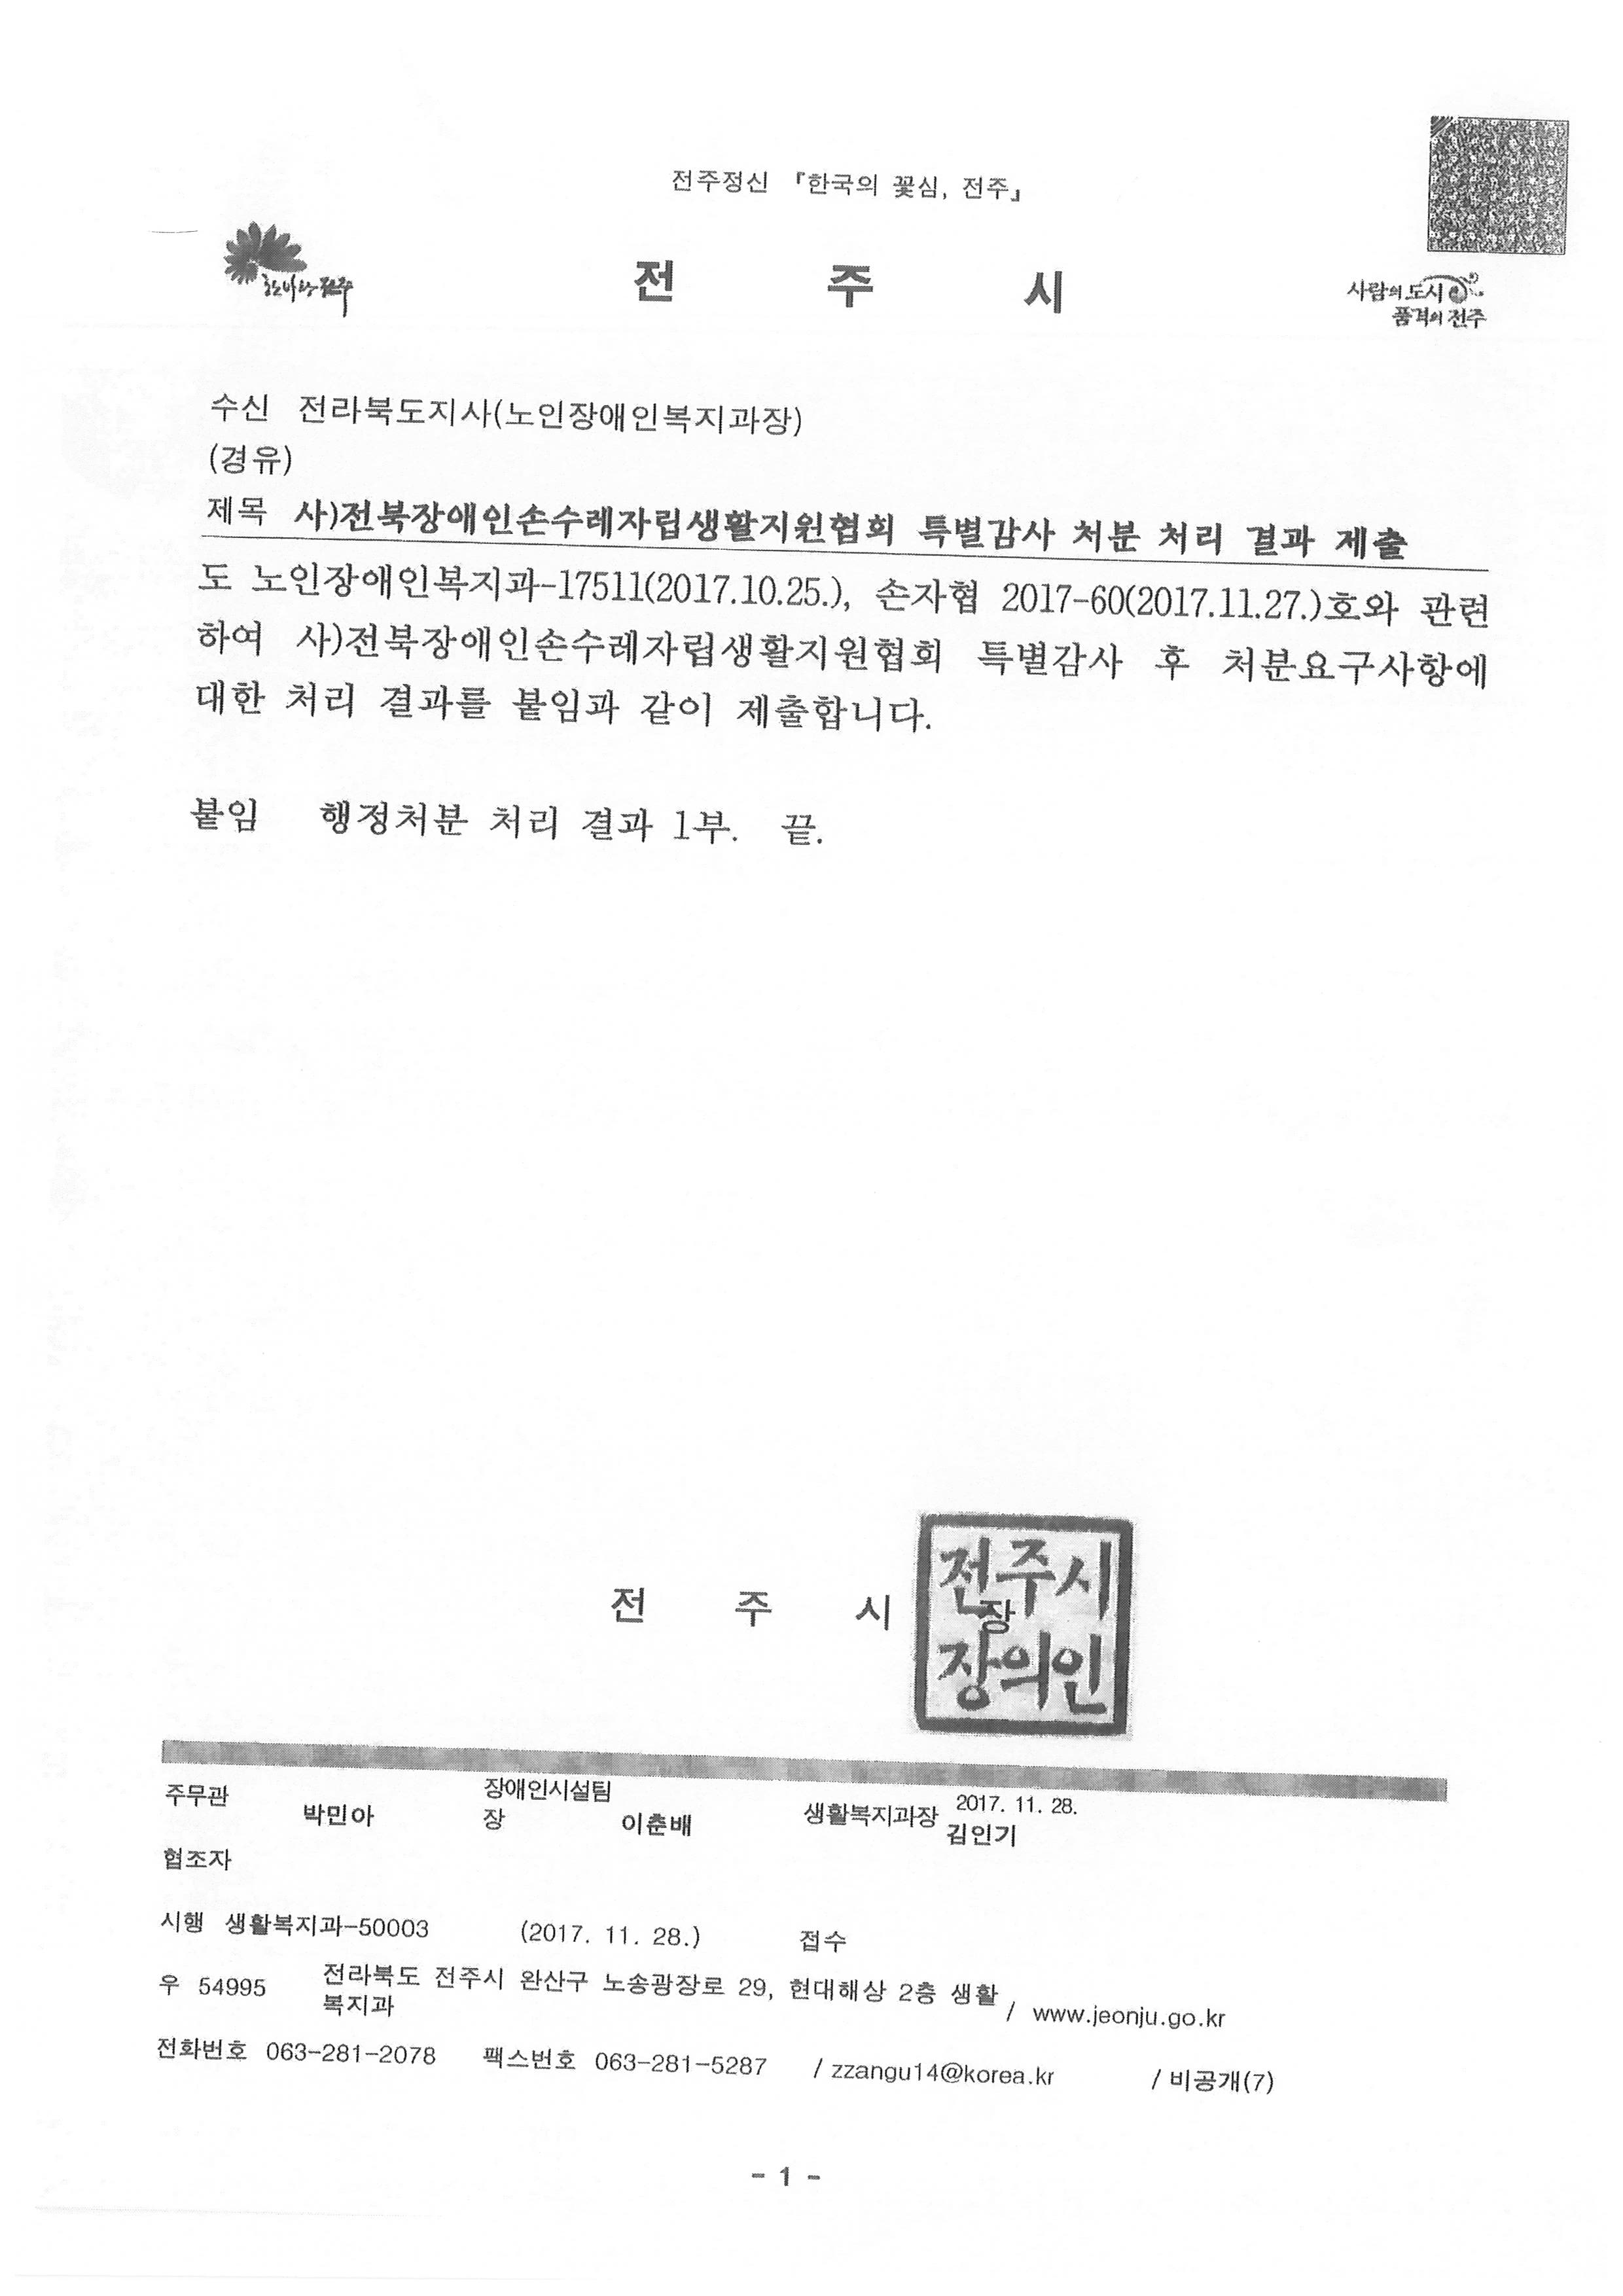 3 전북장애인손수레자립생활지원협회 특별감사 처분 처리결과 제출_페이지_1.jpg